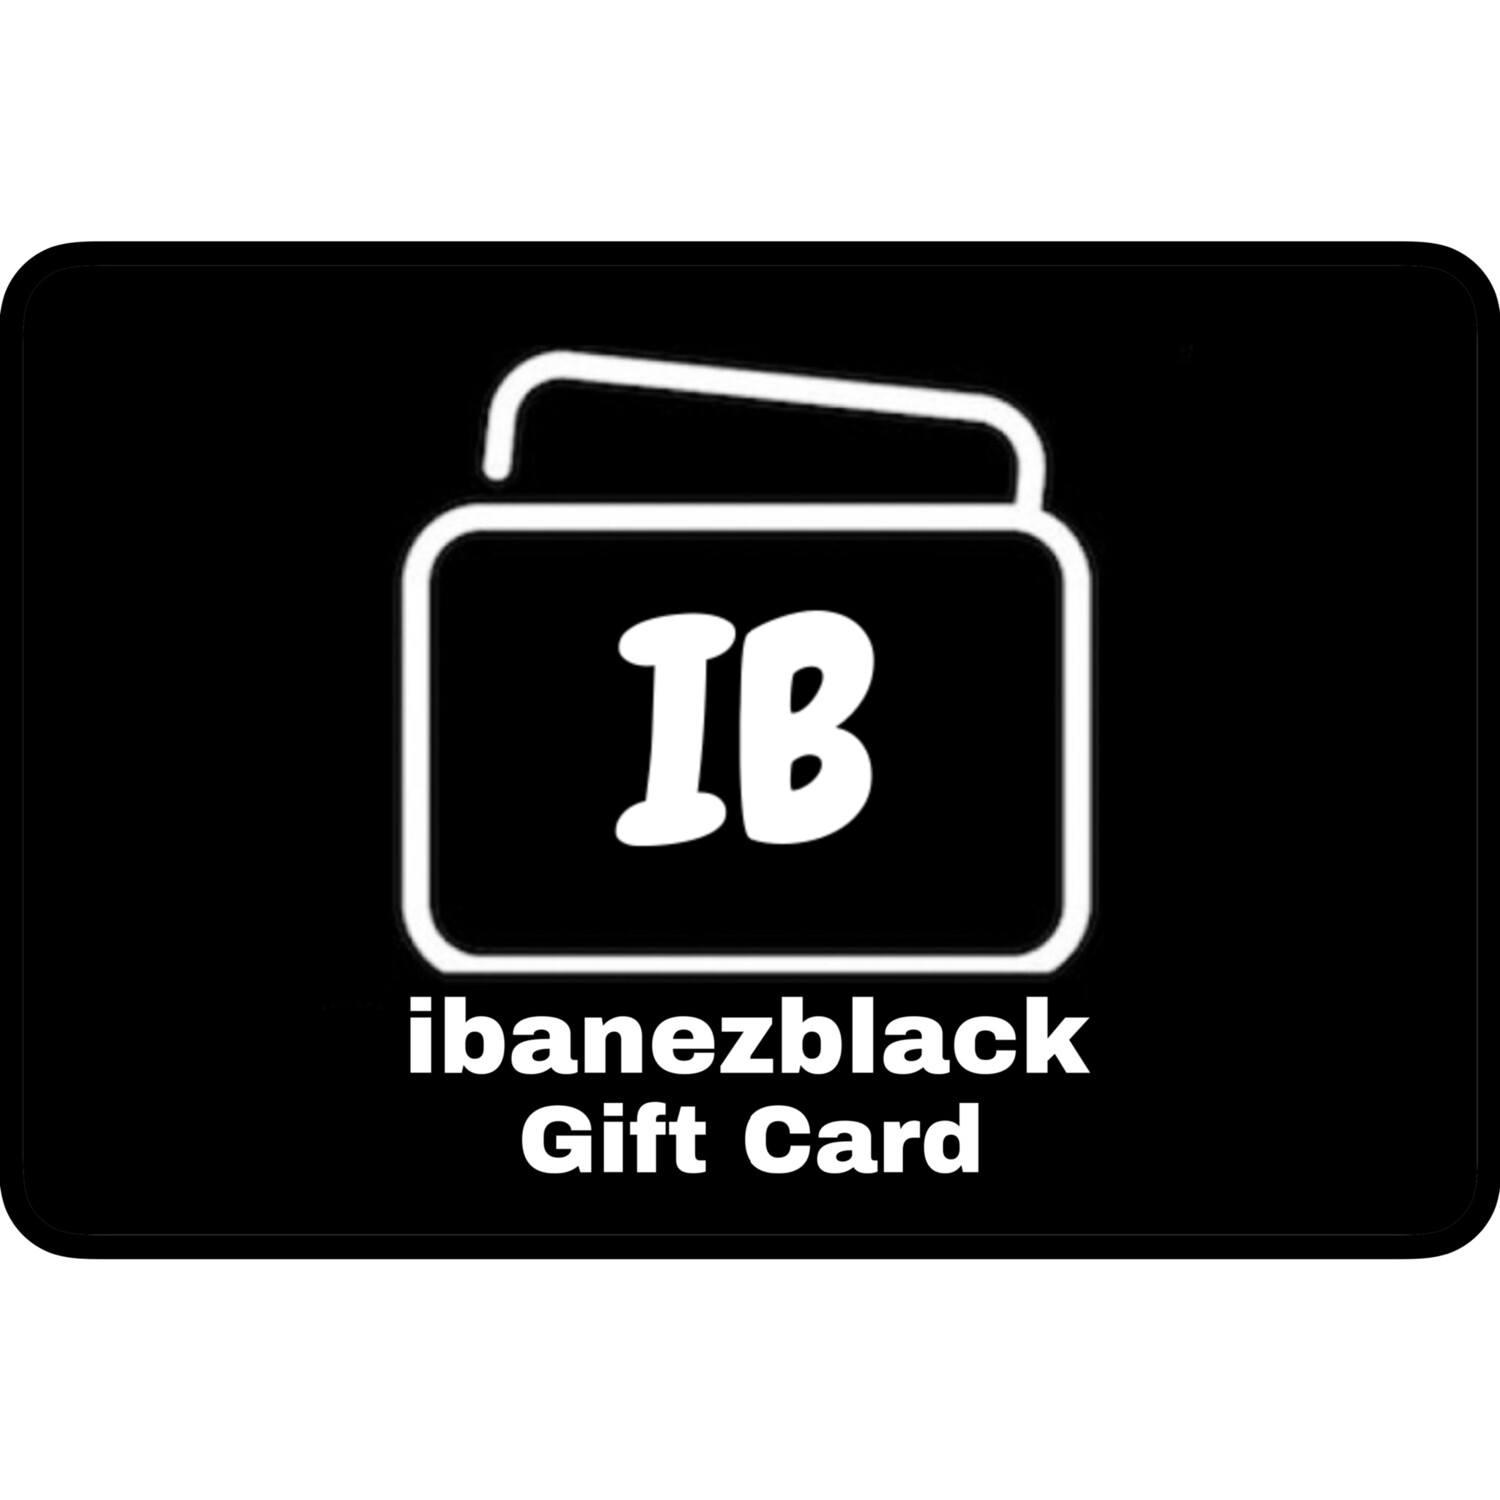 ibanezblack Gift Card